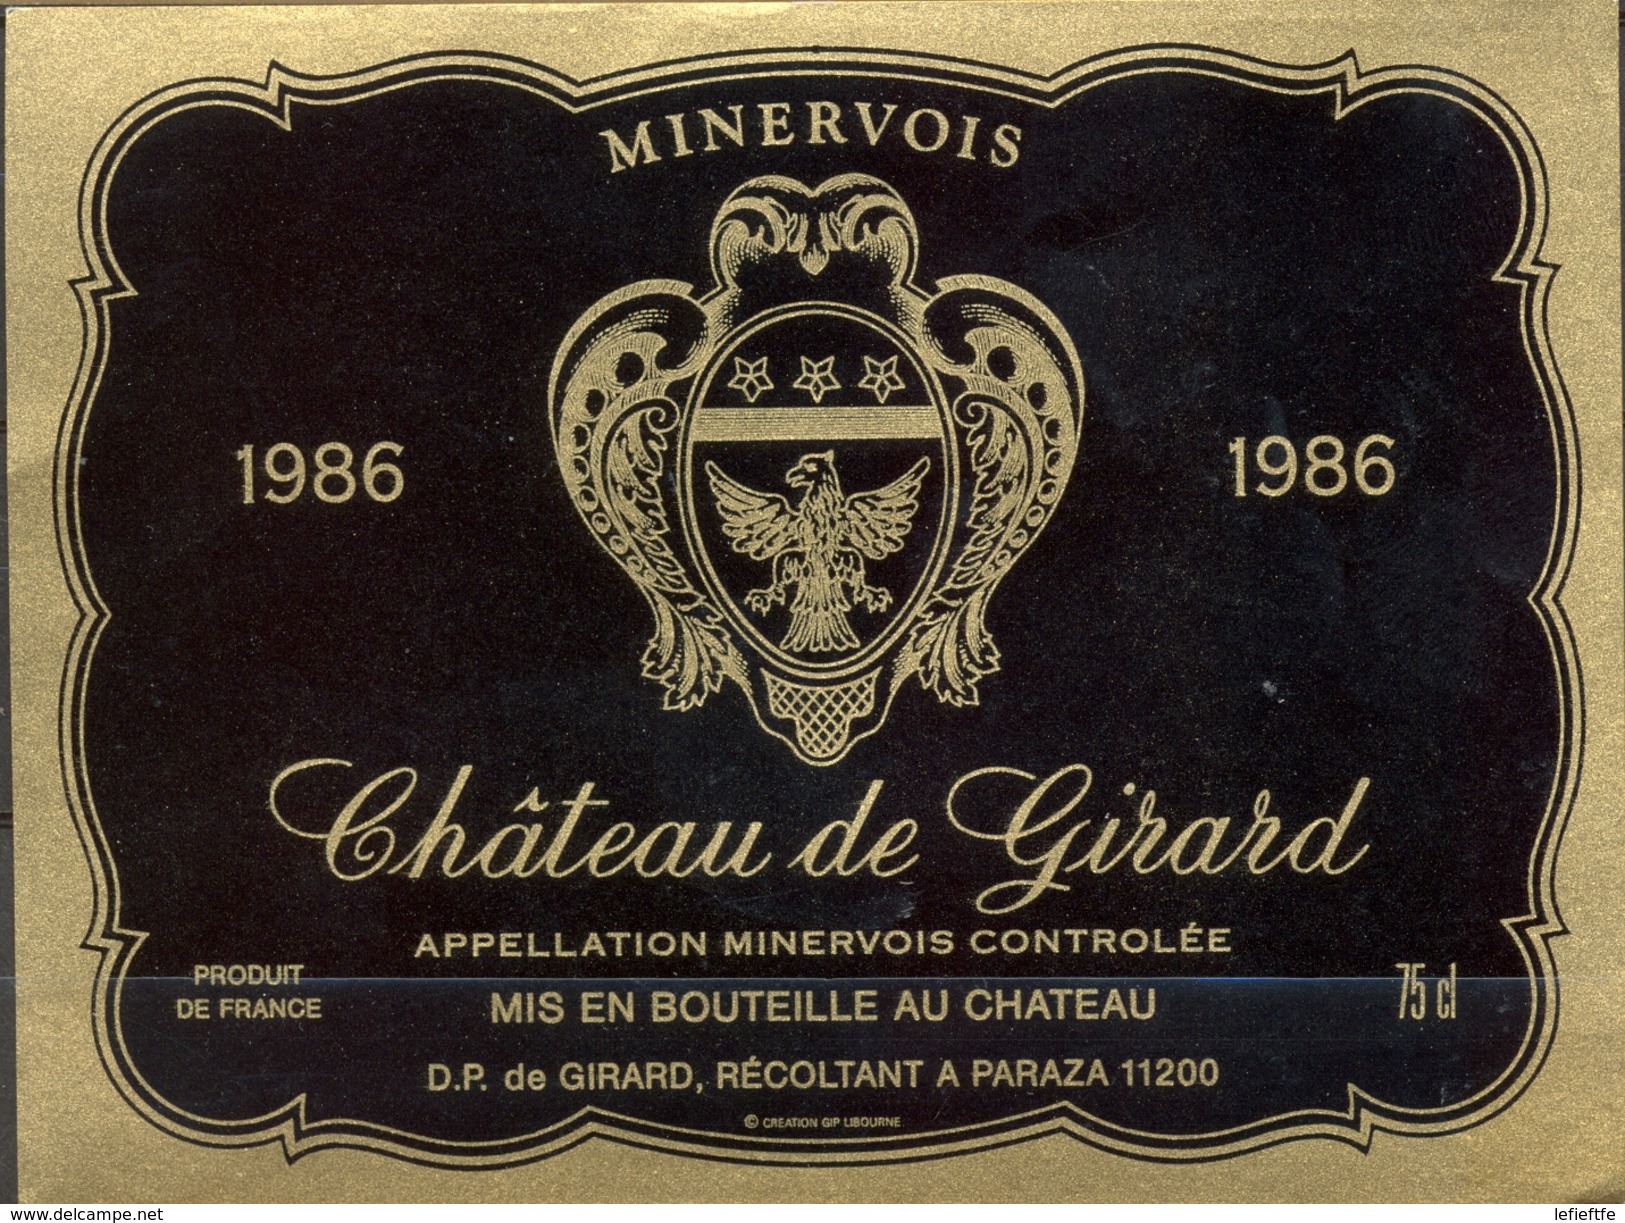 491 - France - 1986 - Minervois - Château De Girard - D.P. De Girard Récoltant à Paraza 11200 - Rode Wijn